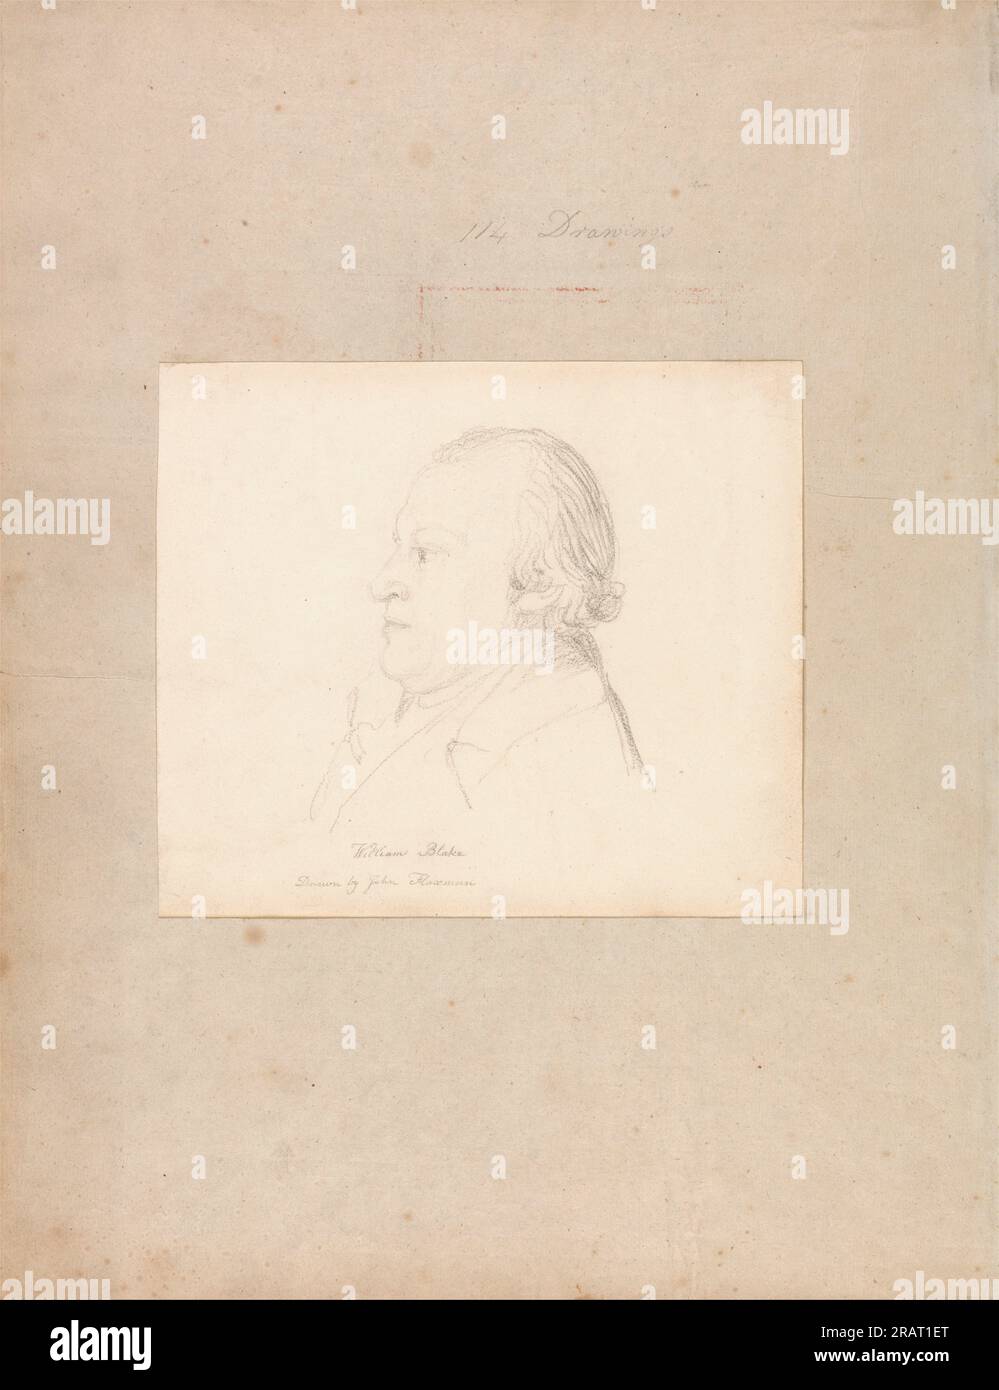 Portrait de William Blake par John Flaxman Banque D'Images